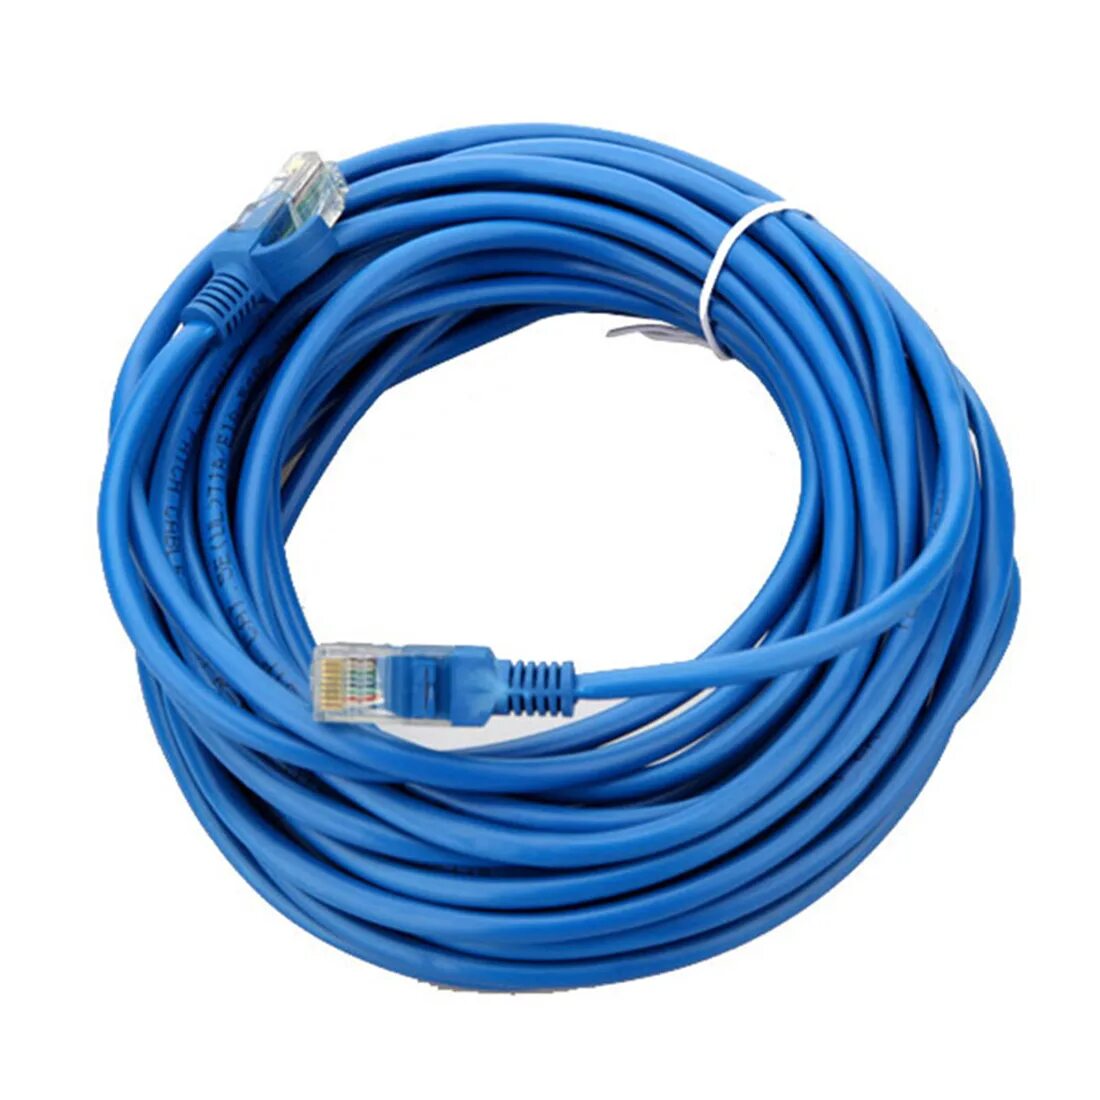 Новый интернет кабель. Провод изернет 5 м. Кабель Ethernet-кабель cat6 lan-кабель 1 м, 2 м, 3 м, 5 м, 10 м,. Кабель интернетный кат 5 rj5. Кабель 8m 8m.